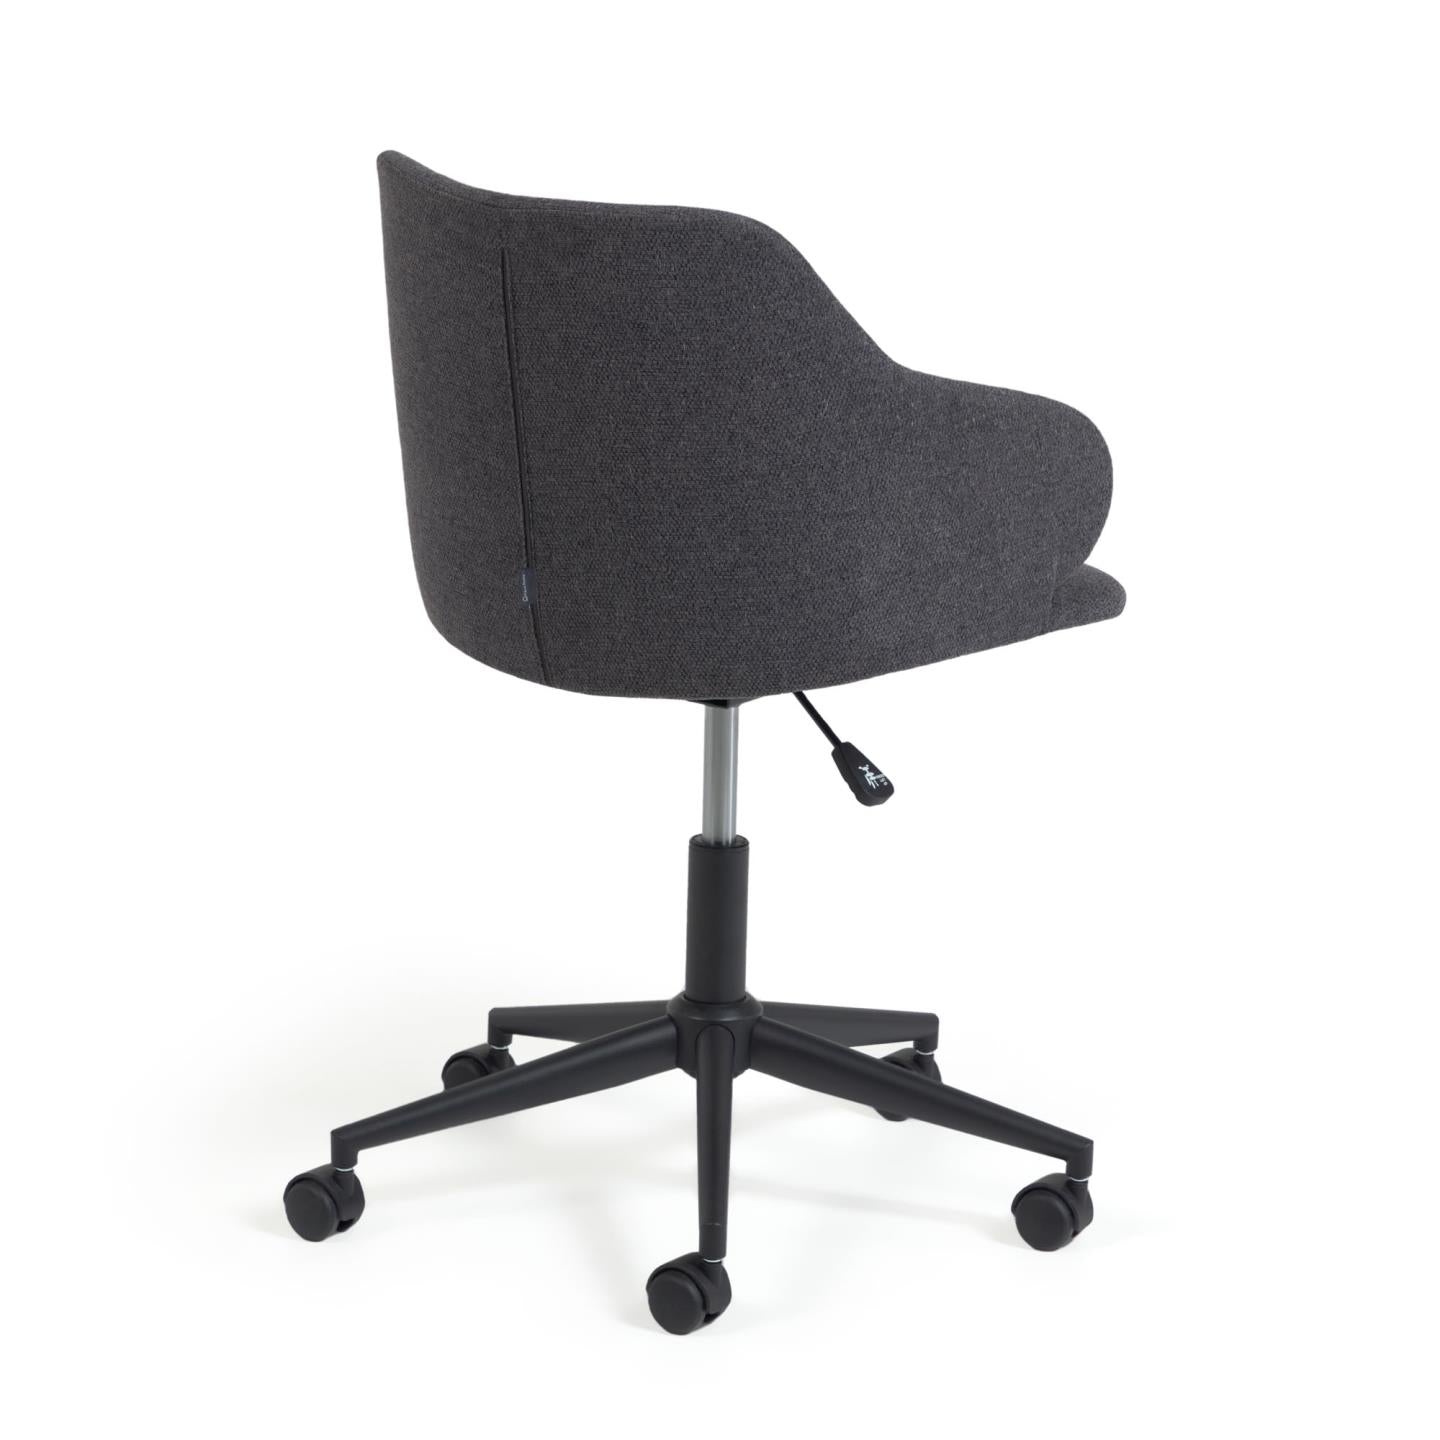 Einara dark grey office chair